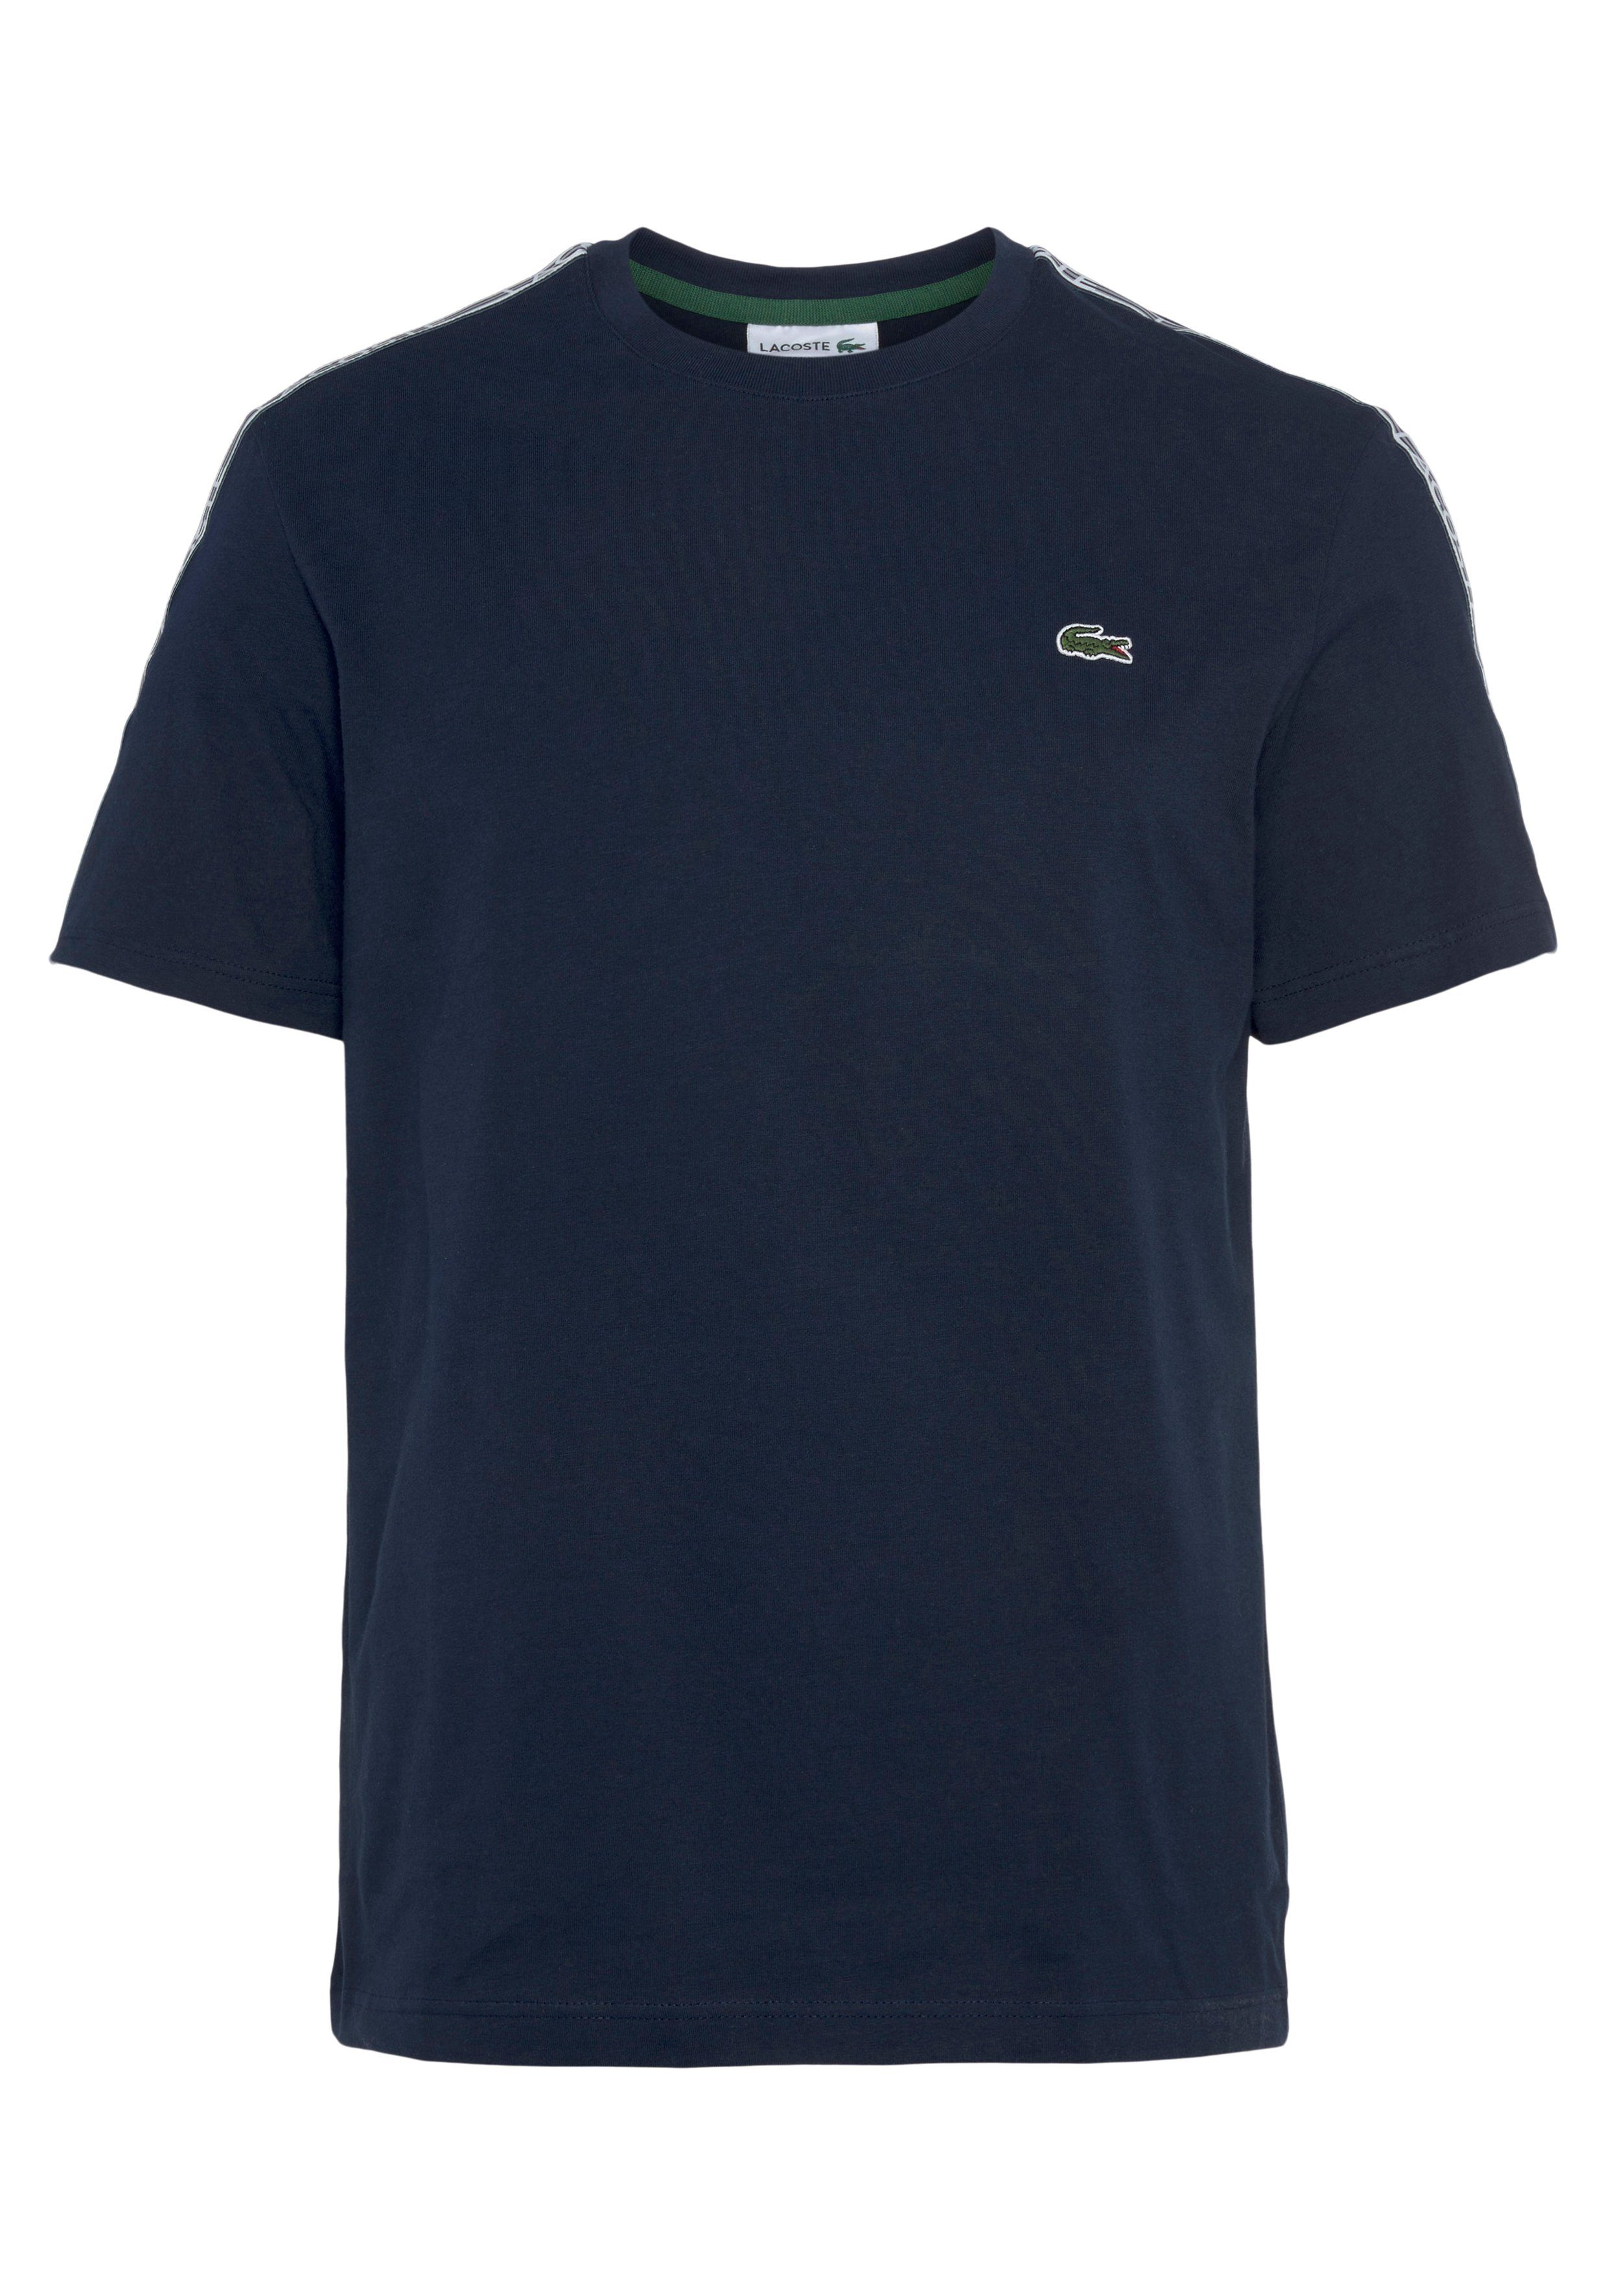 Lacoste T-Shirt mit beschriftetem Kontrastband an den Schultern navy blue